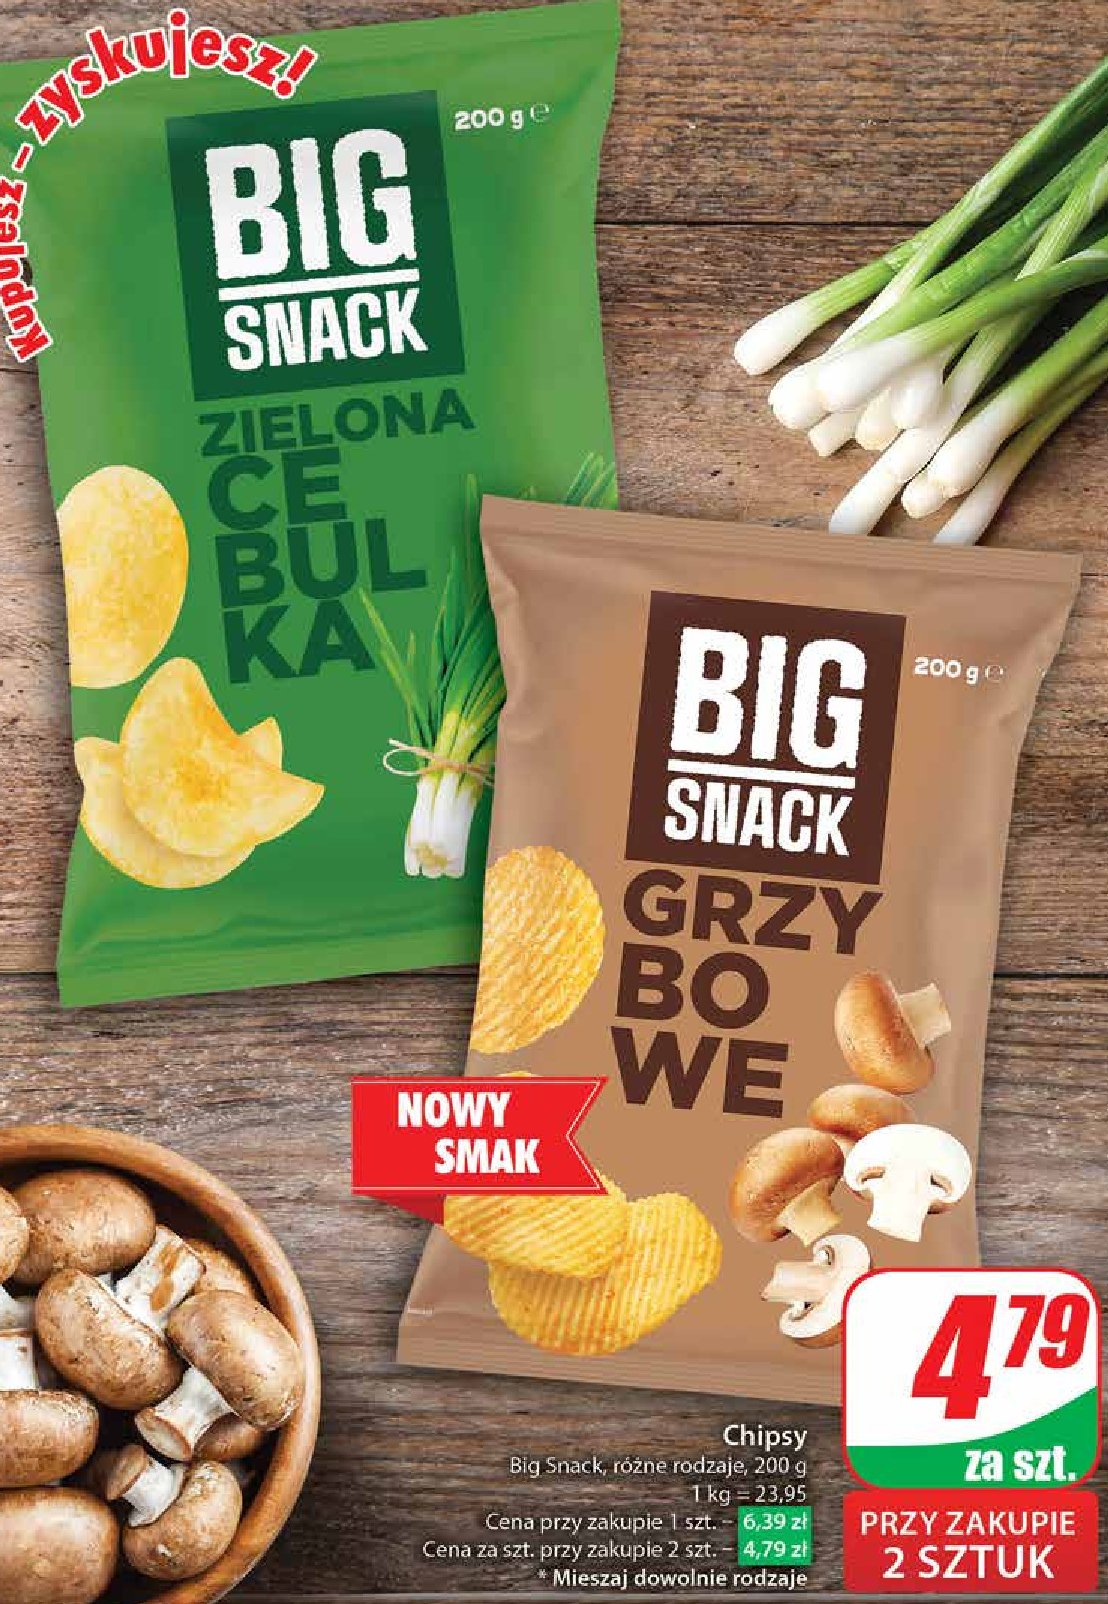 Chipsy grzybowe Big snack promocja